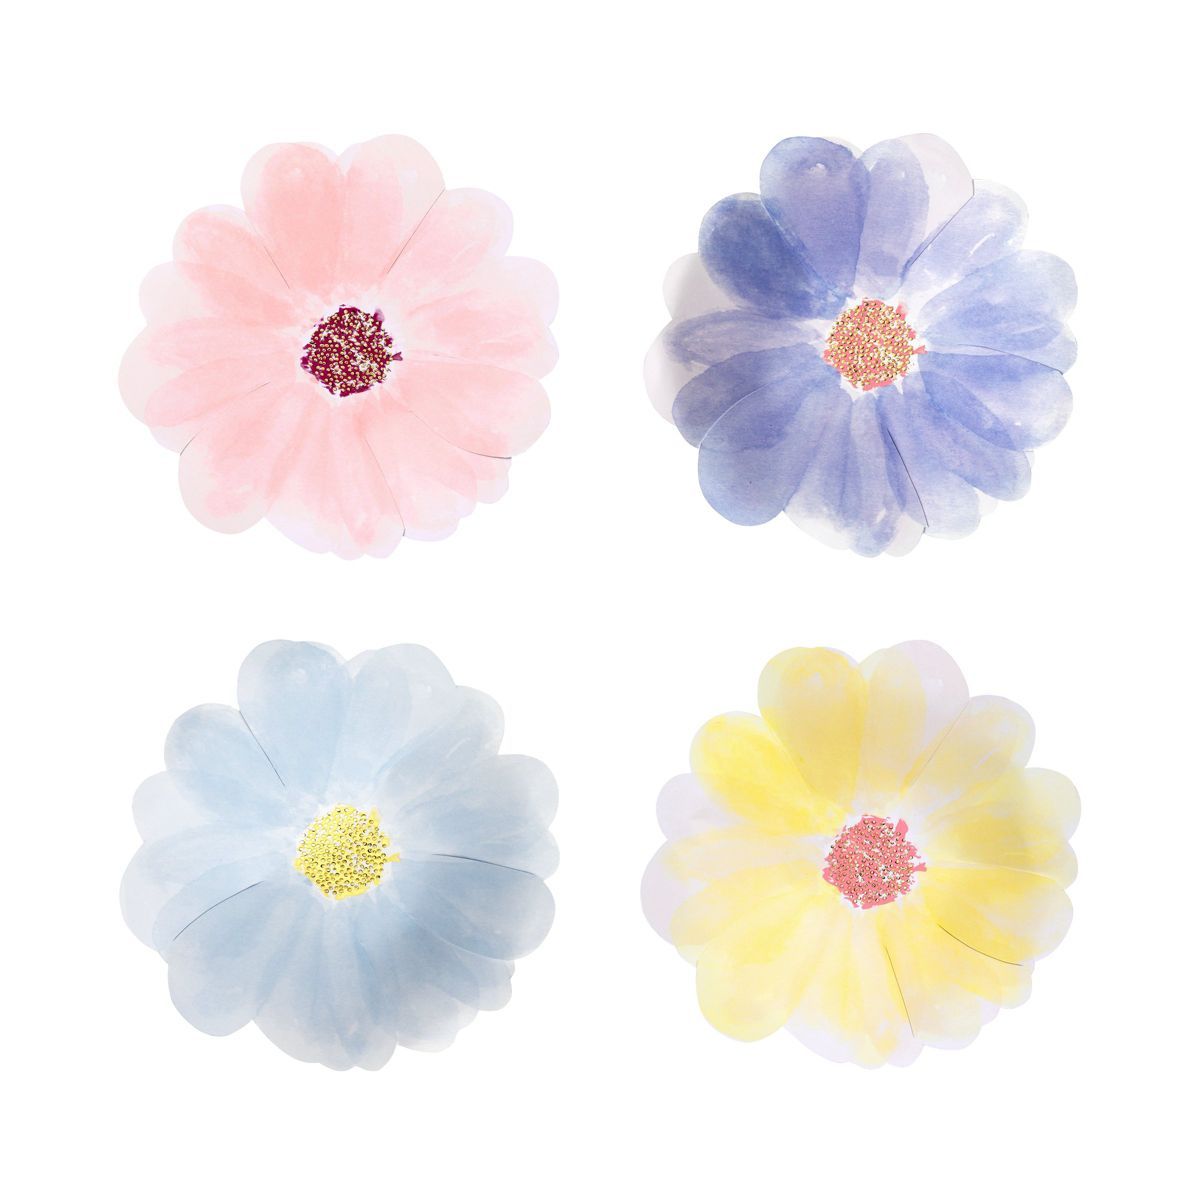 Meri Meri Flower Garden Small Plates (Pack of 8) | Target